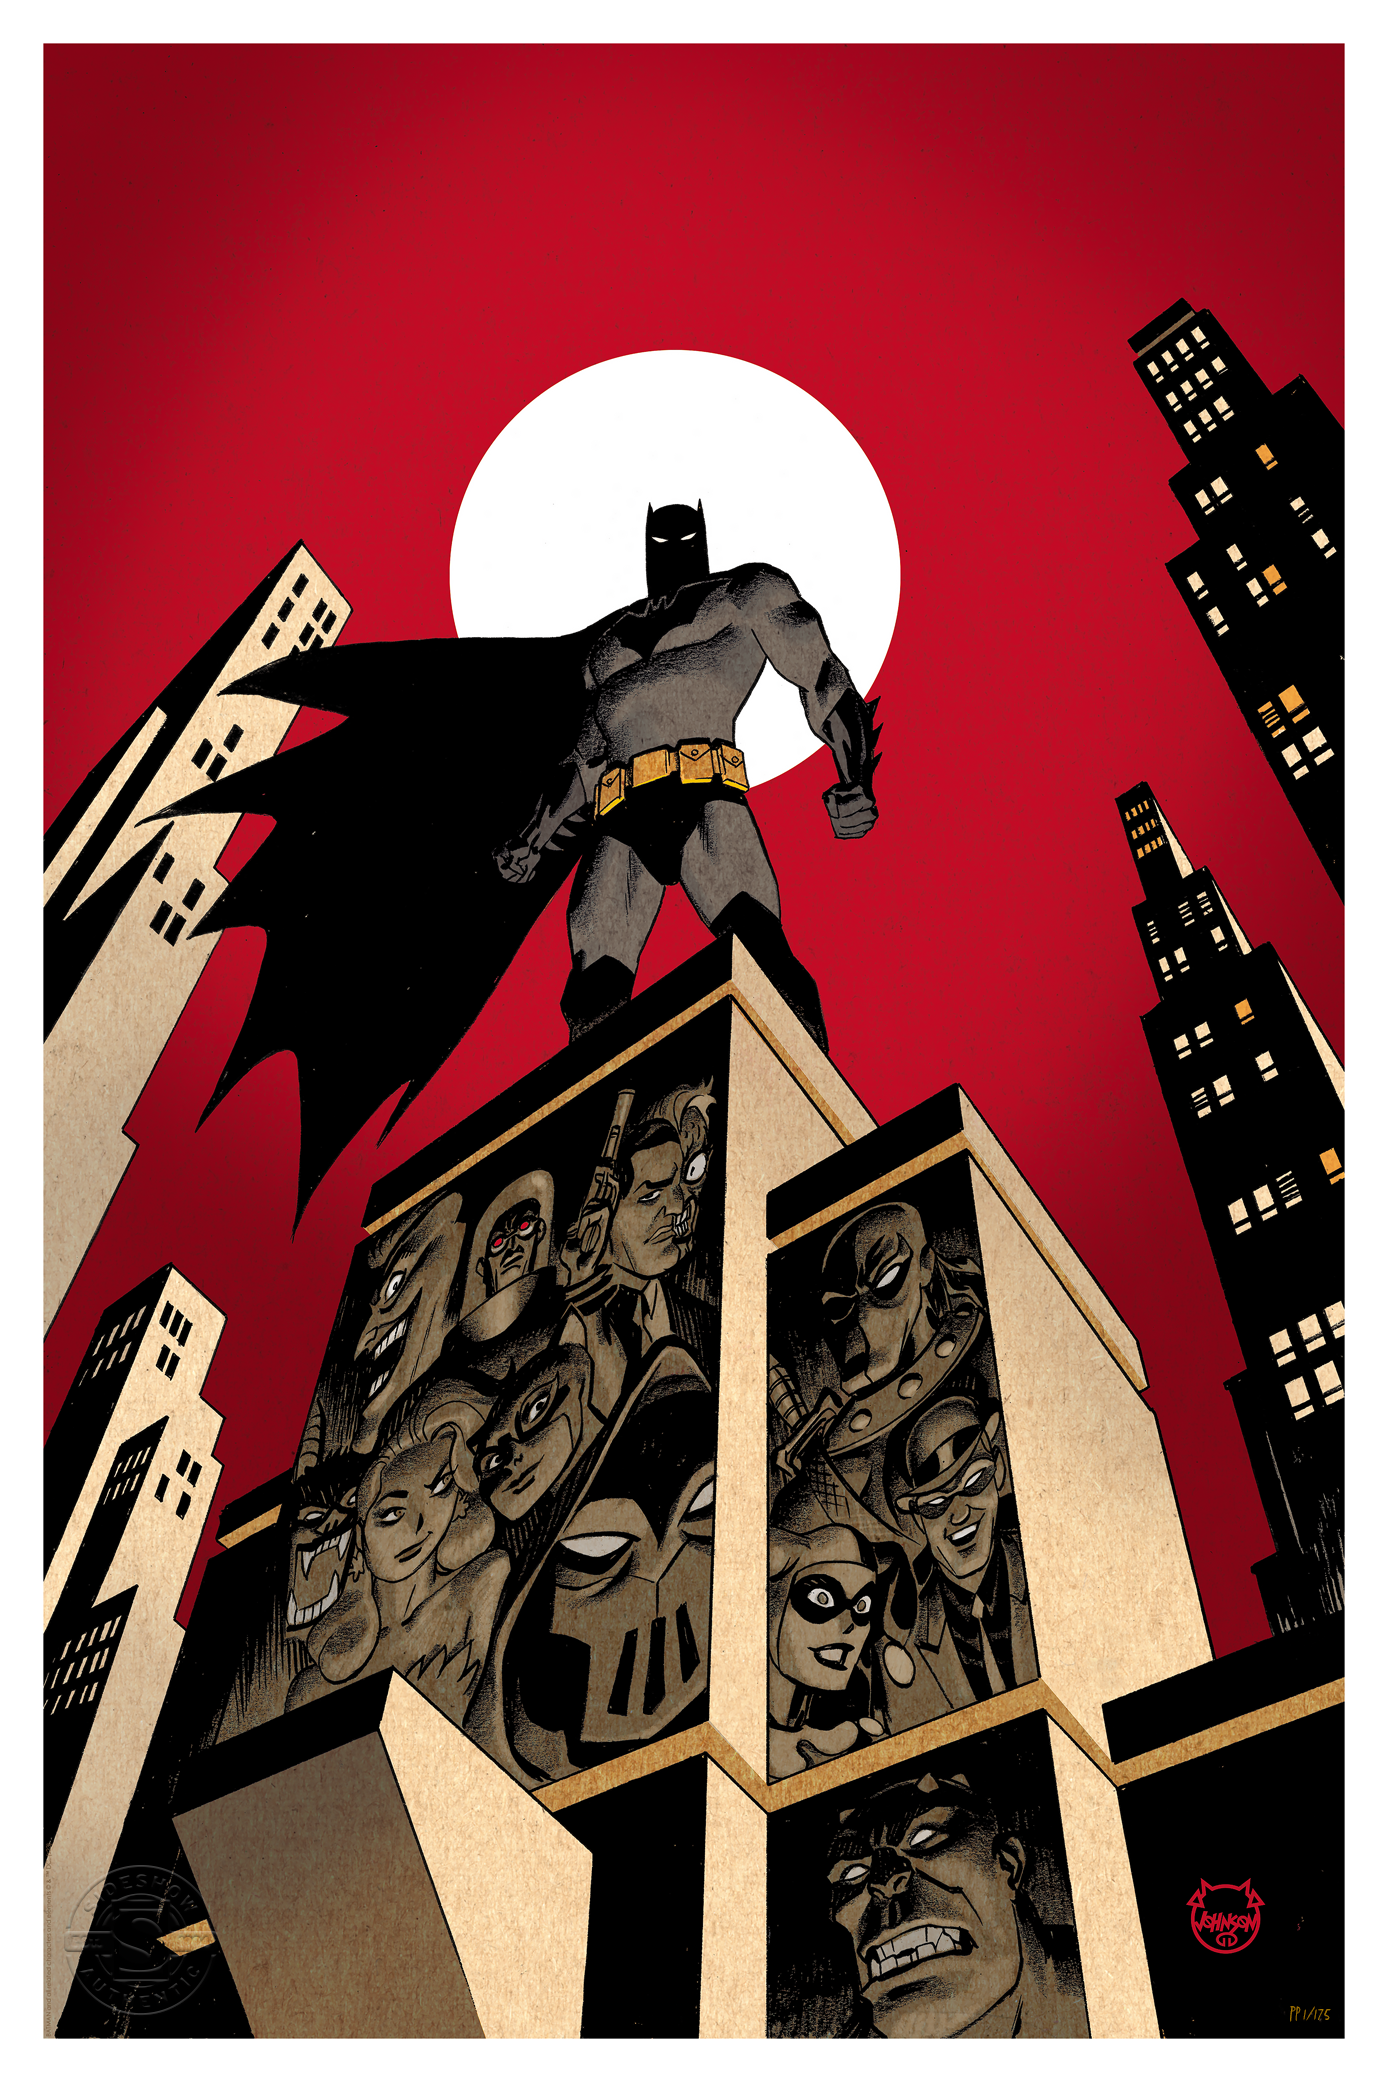 A.R.C.H.I.V.E.  Batman wallpaper, Batman artwork, Batman comics